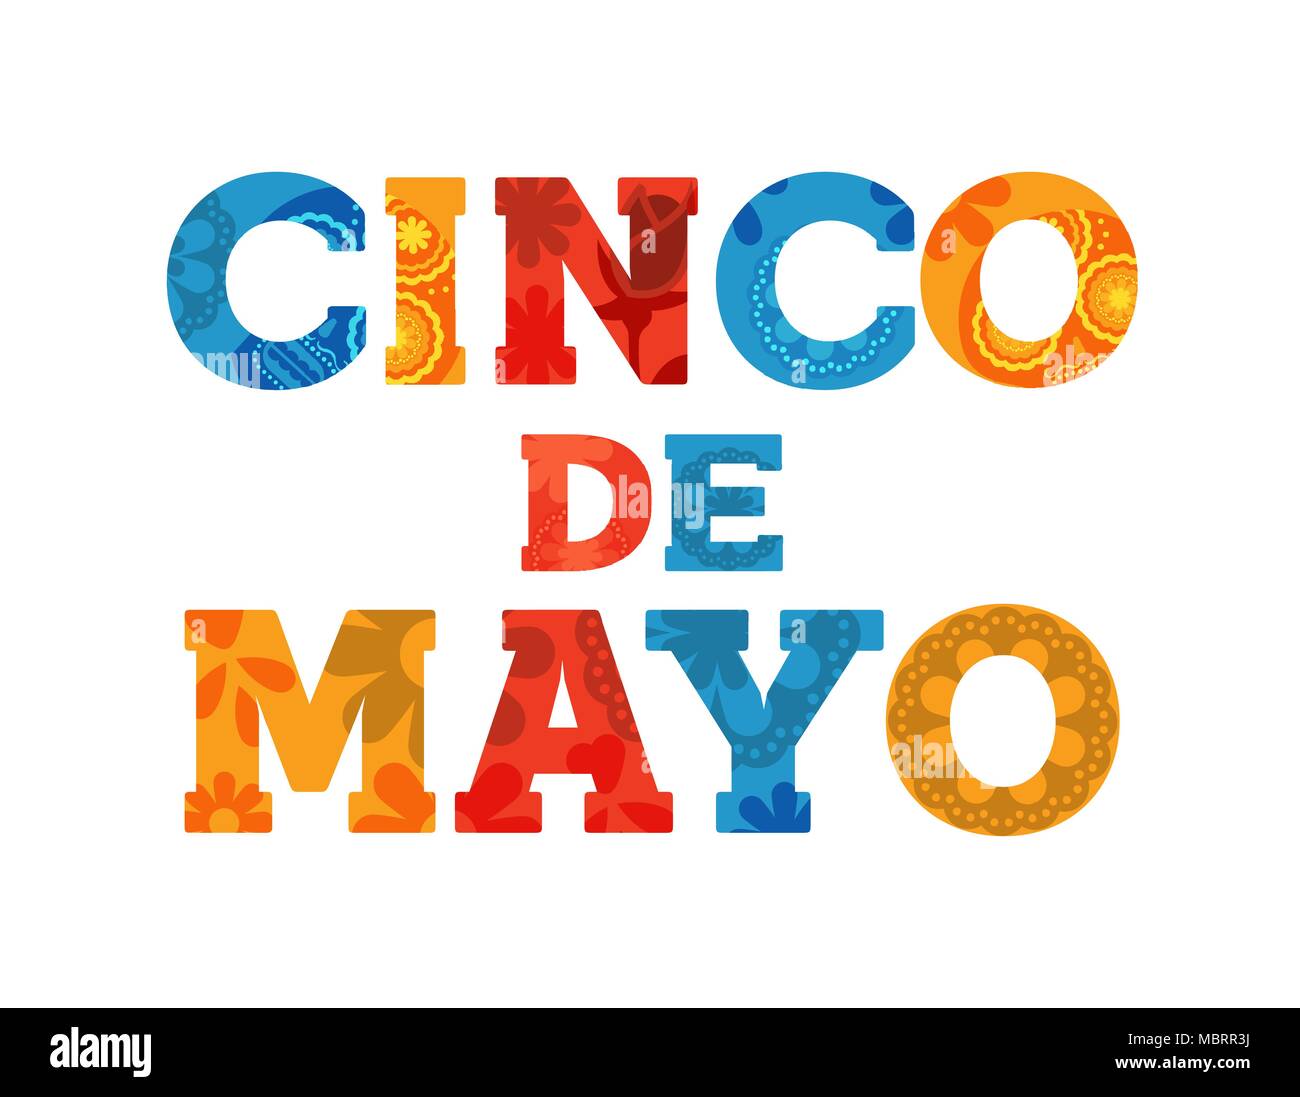 Heureux Le Cinco de Mayo typographie citer carte pour vacances mexicaines colorées avec lettre de décoration. Vecteur EPS10. Illustration de Vecteur